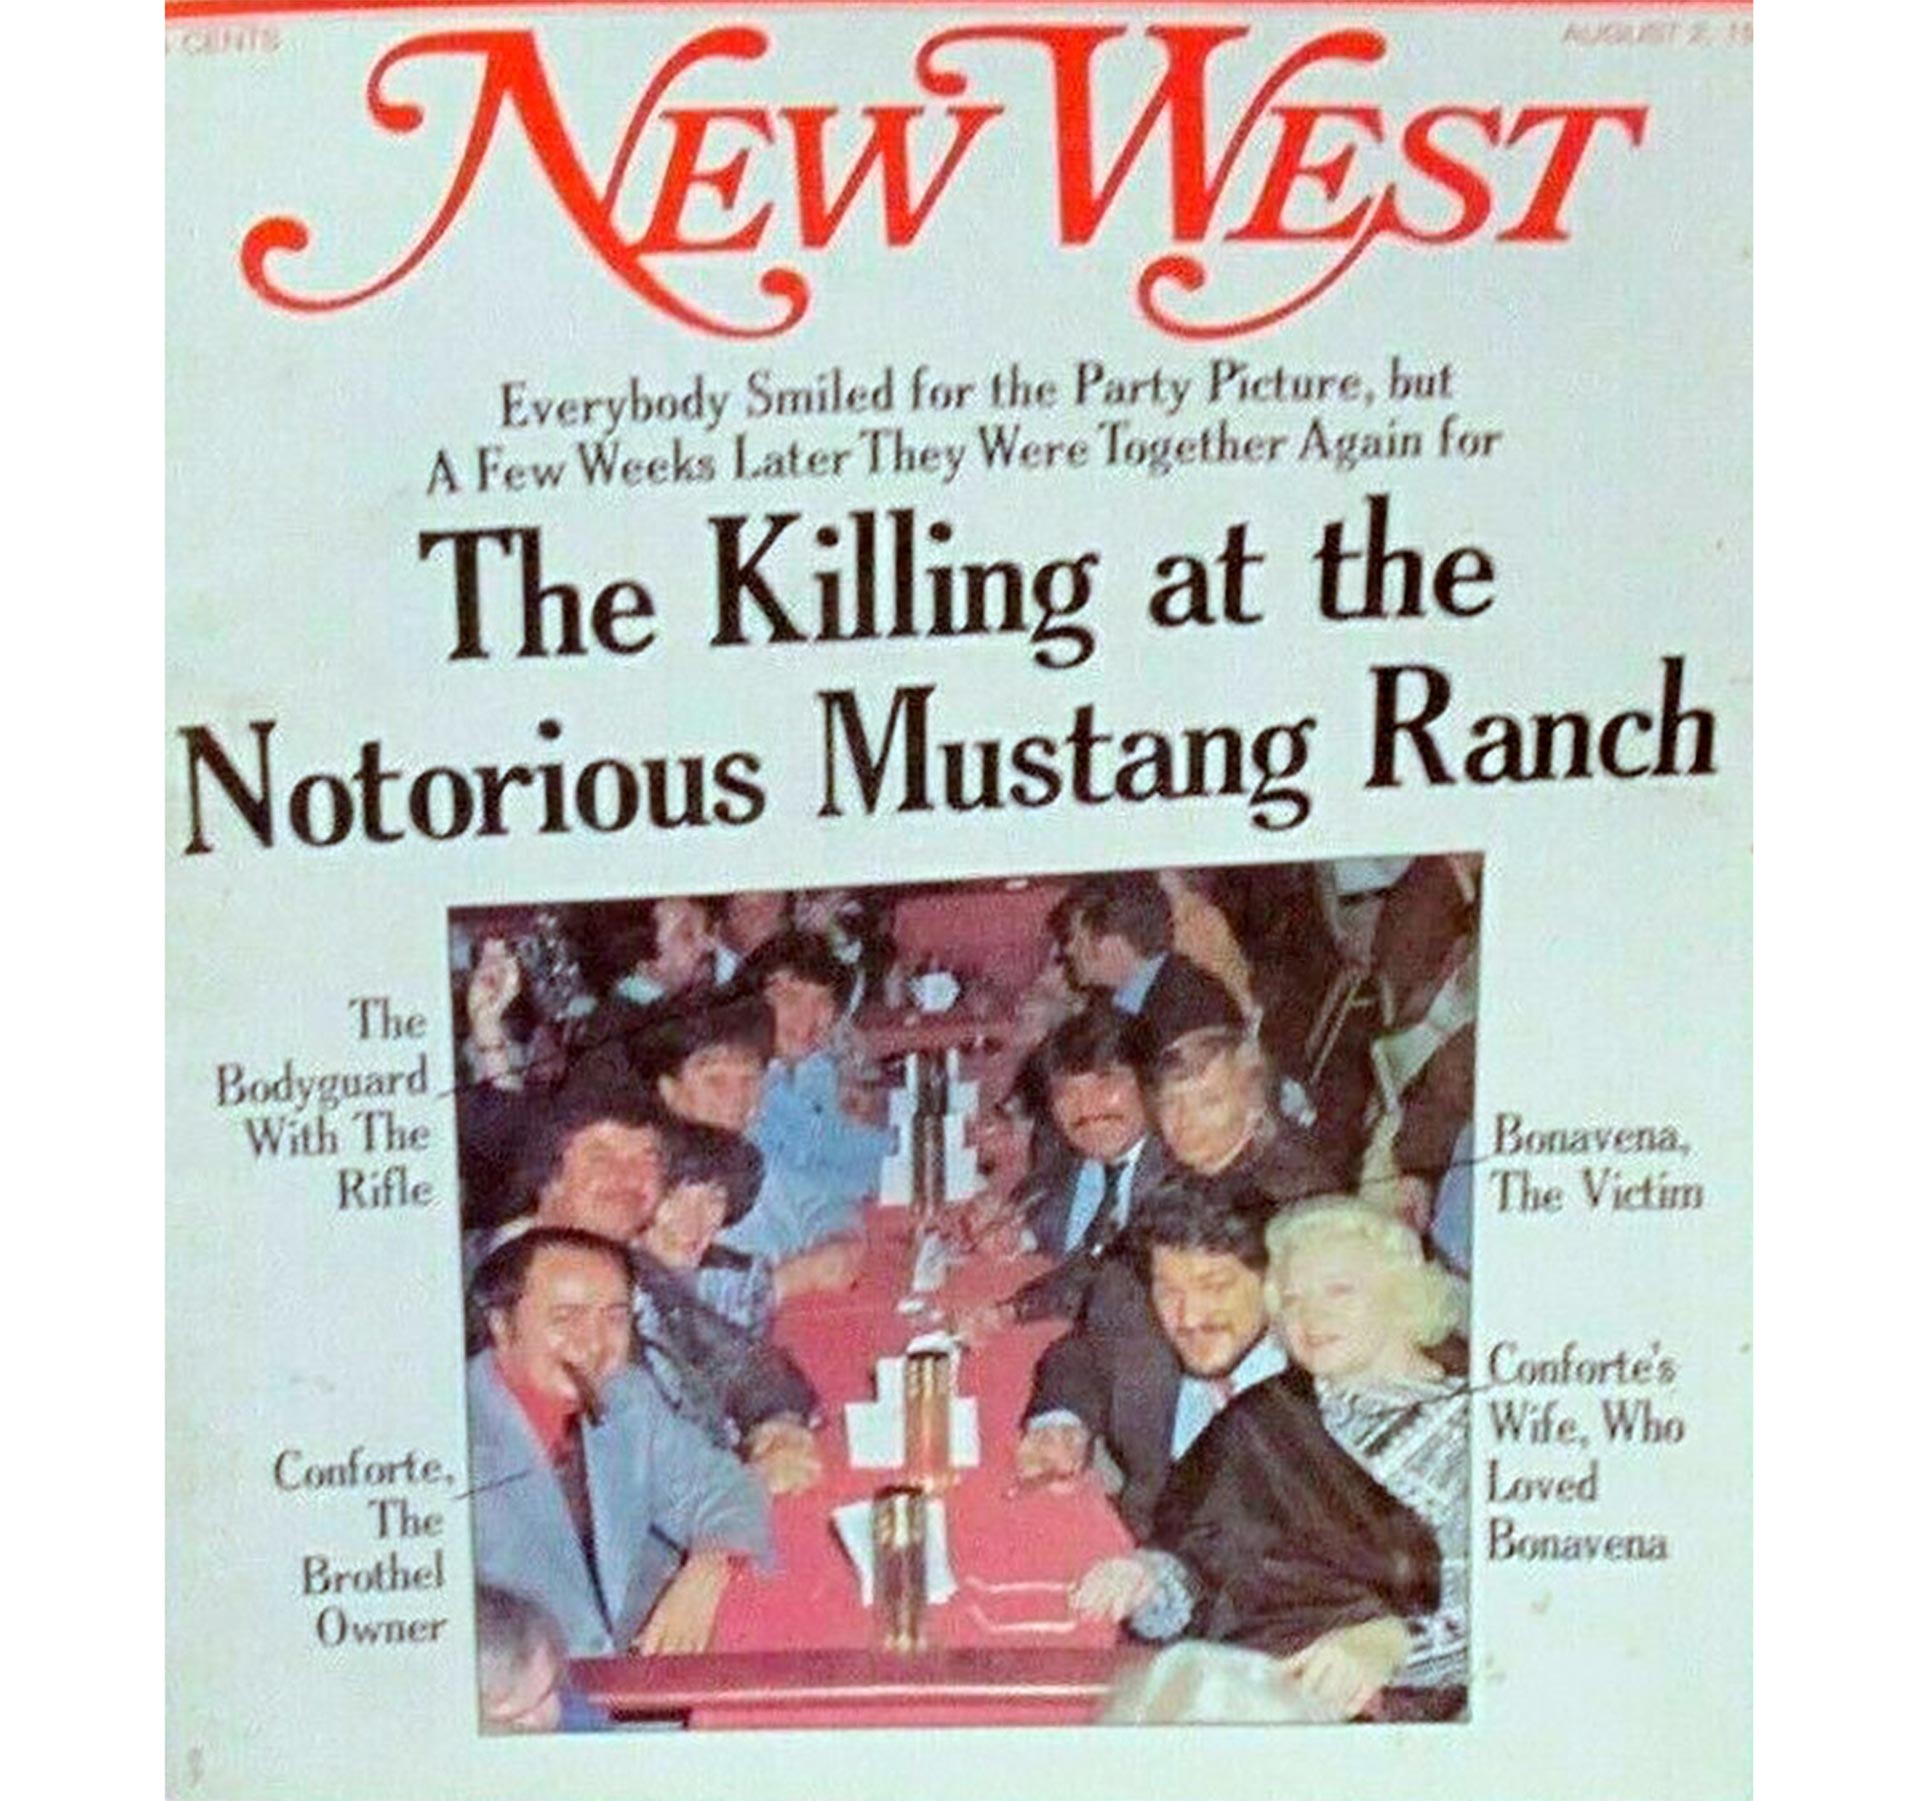 Joe, Sally y Ringo en la portada de "New West" tras el crimen